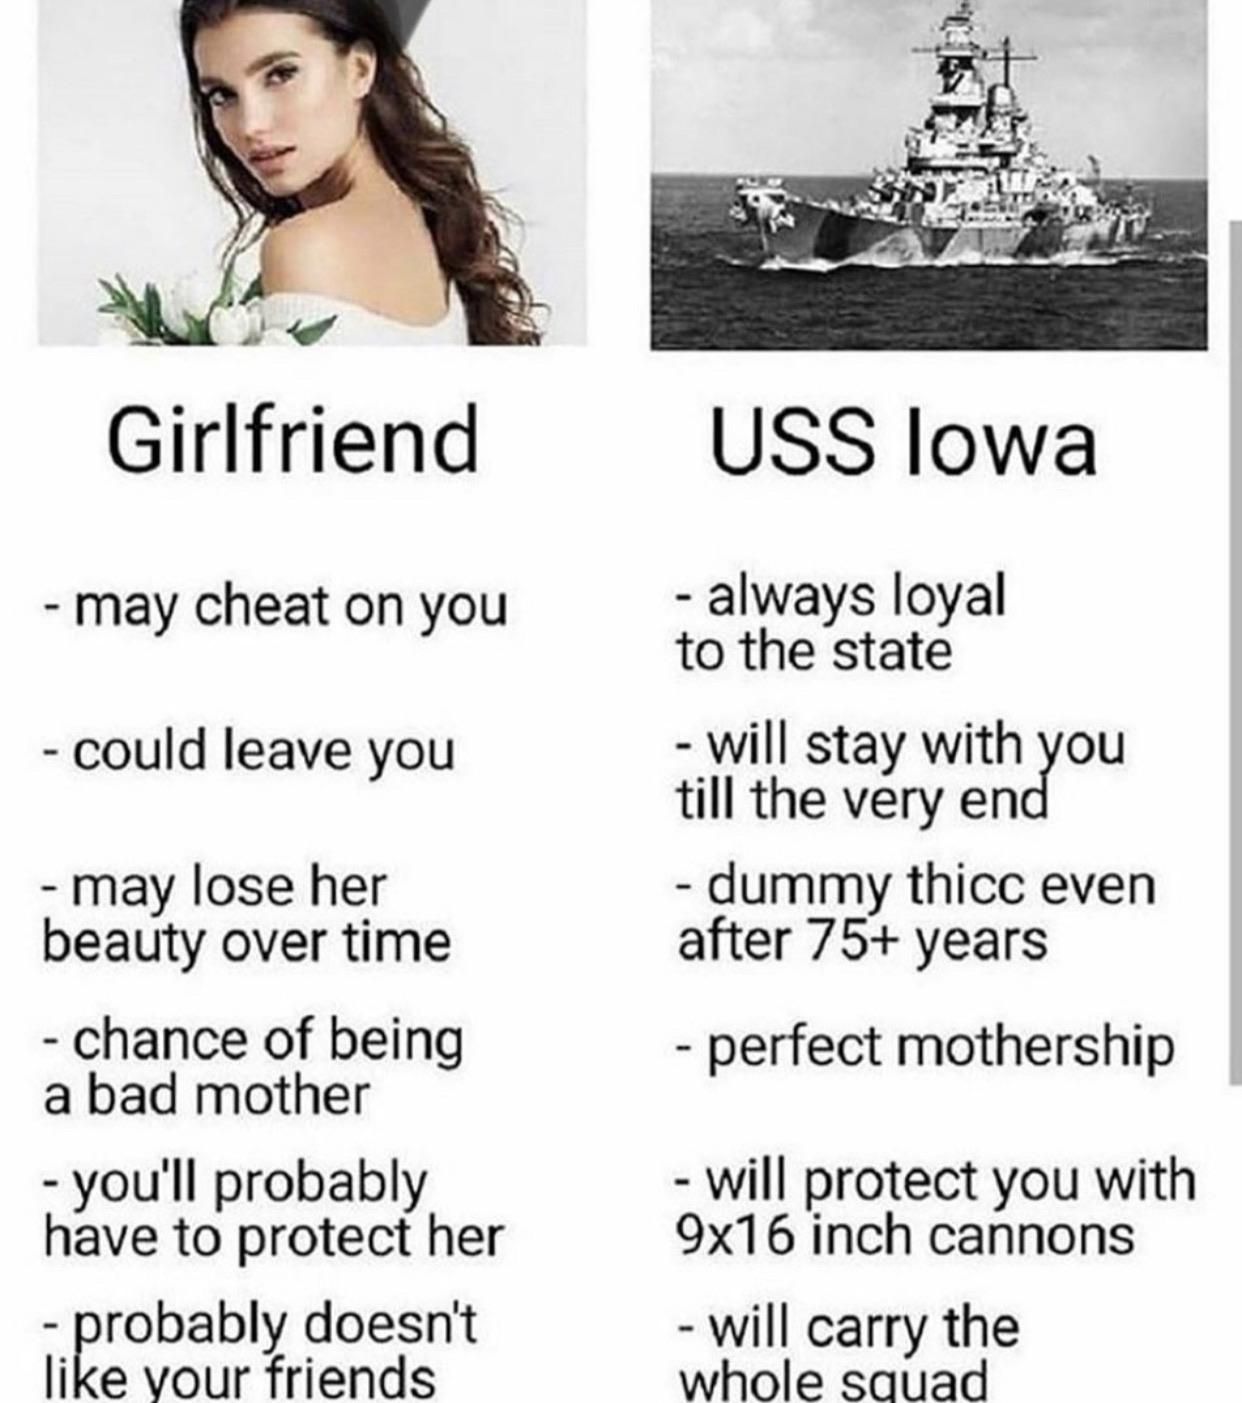 USS Iowa > a girlfriend